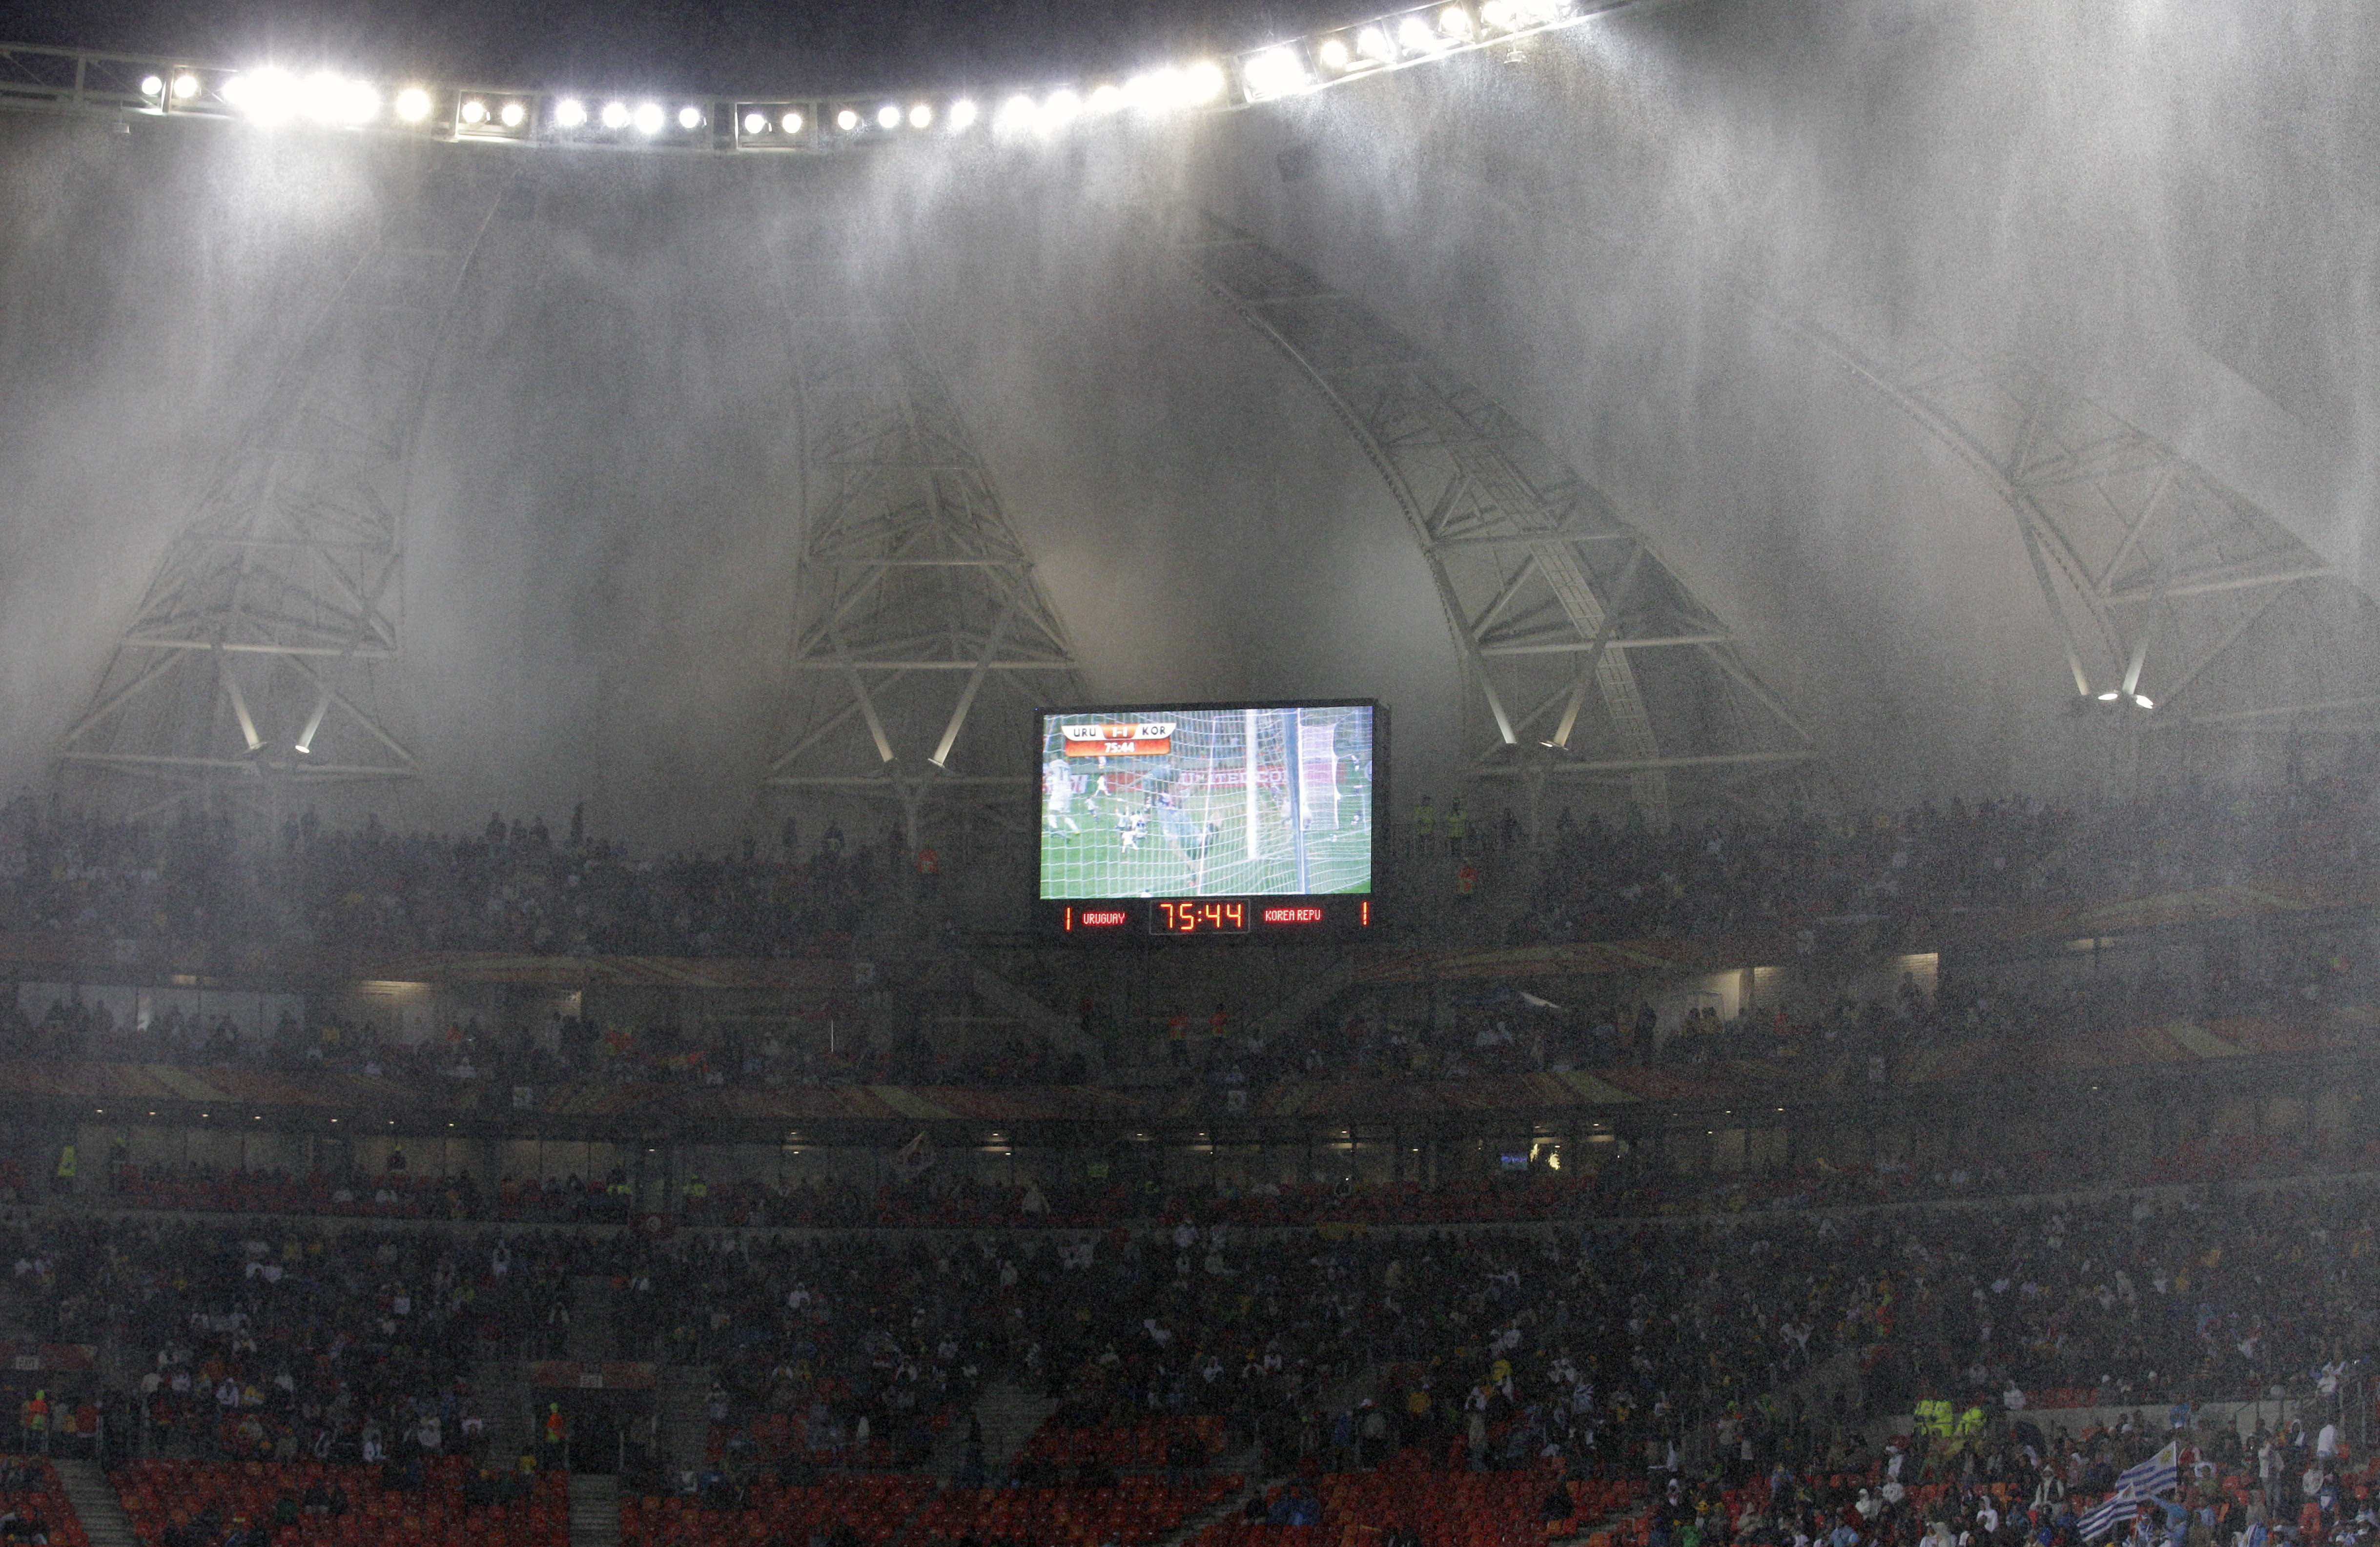 Regnet höll på att spela en avgörande roll i åttondelsfinalen mellan Uruguay och Sydkorea.